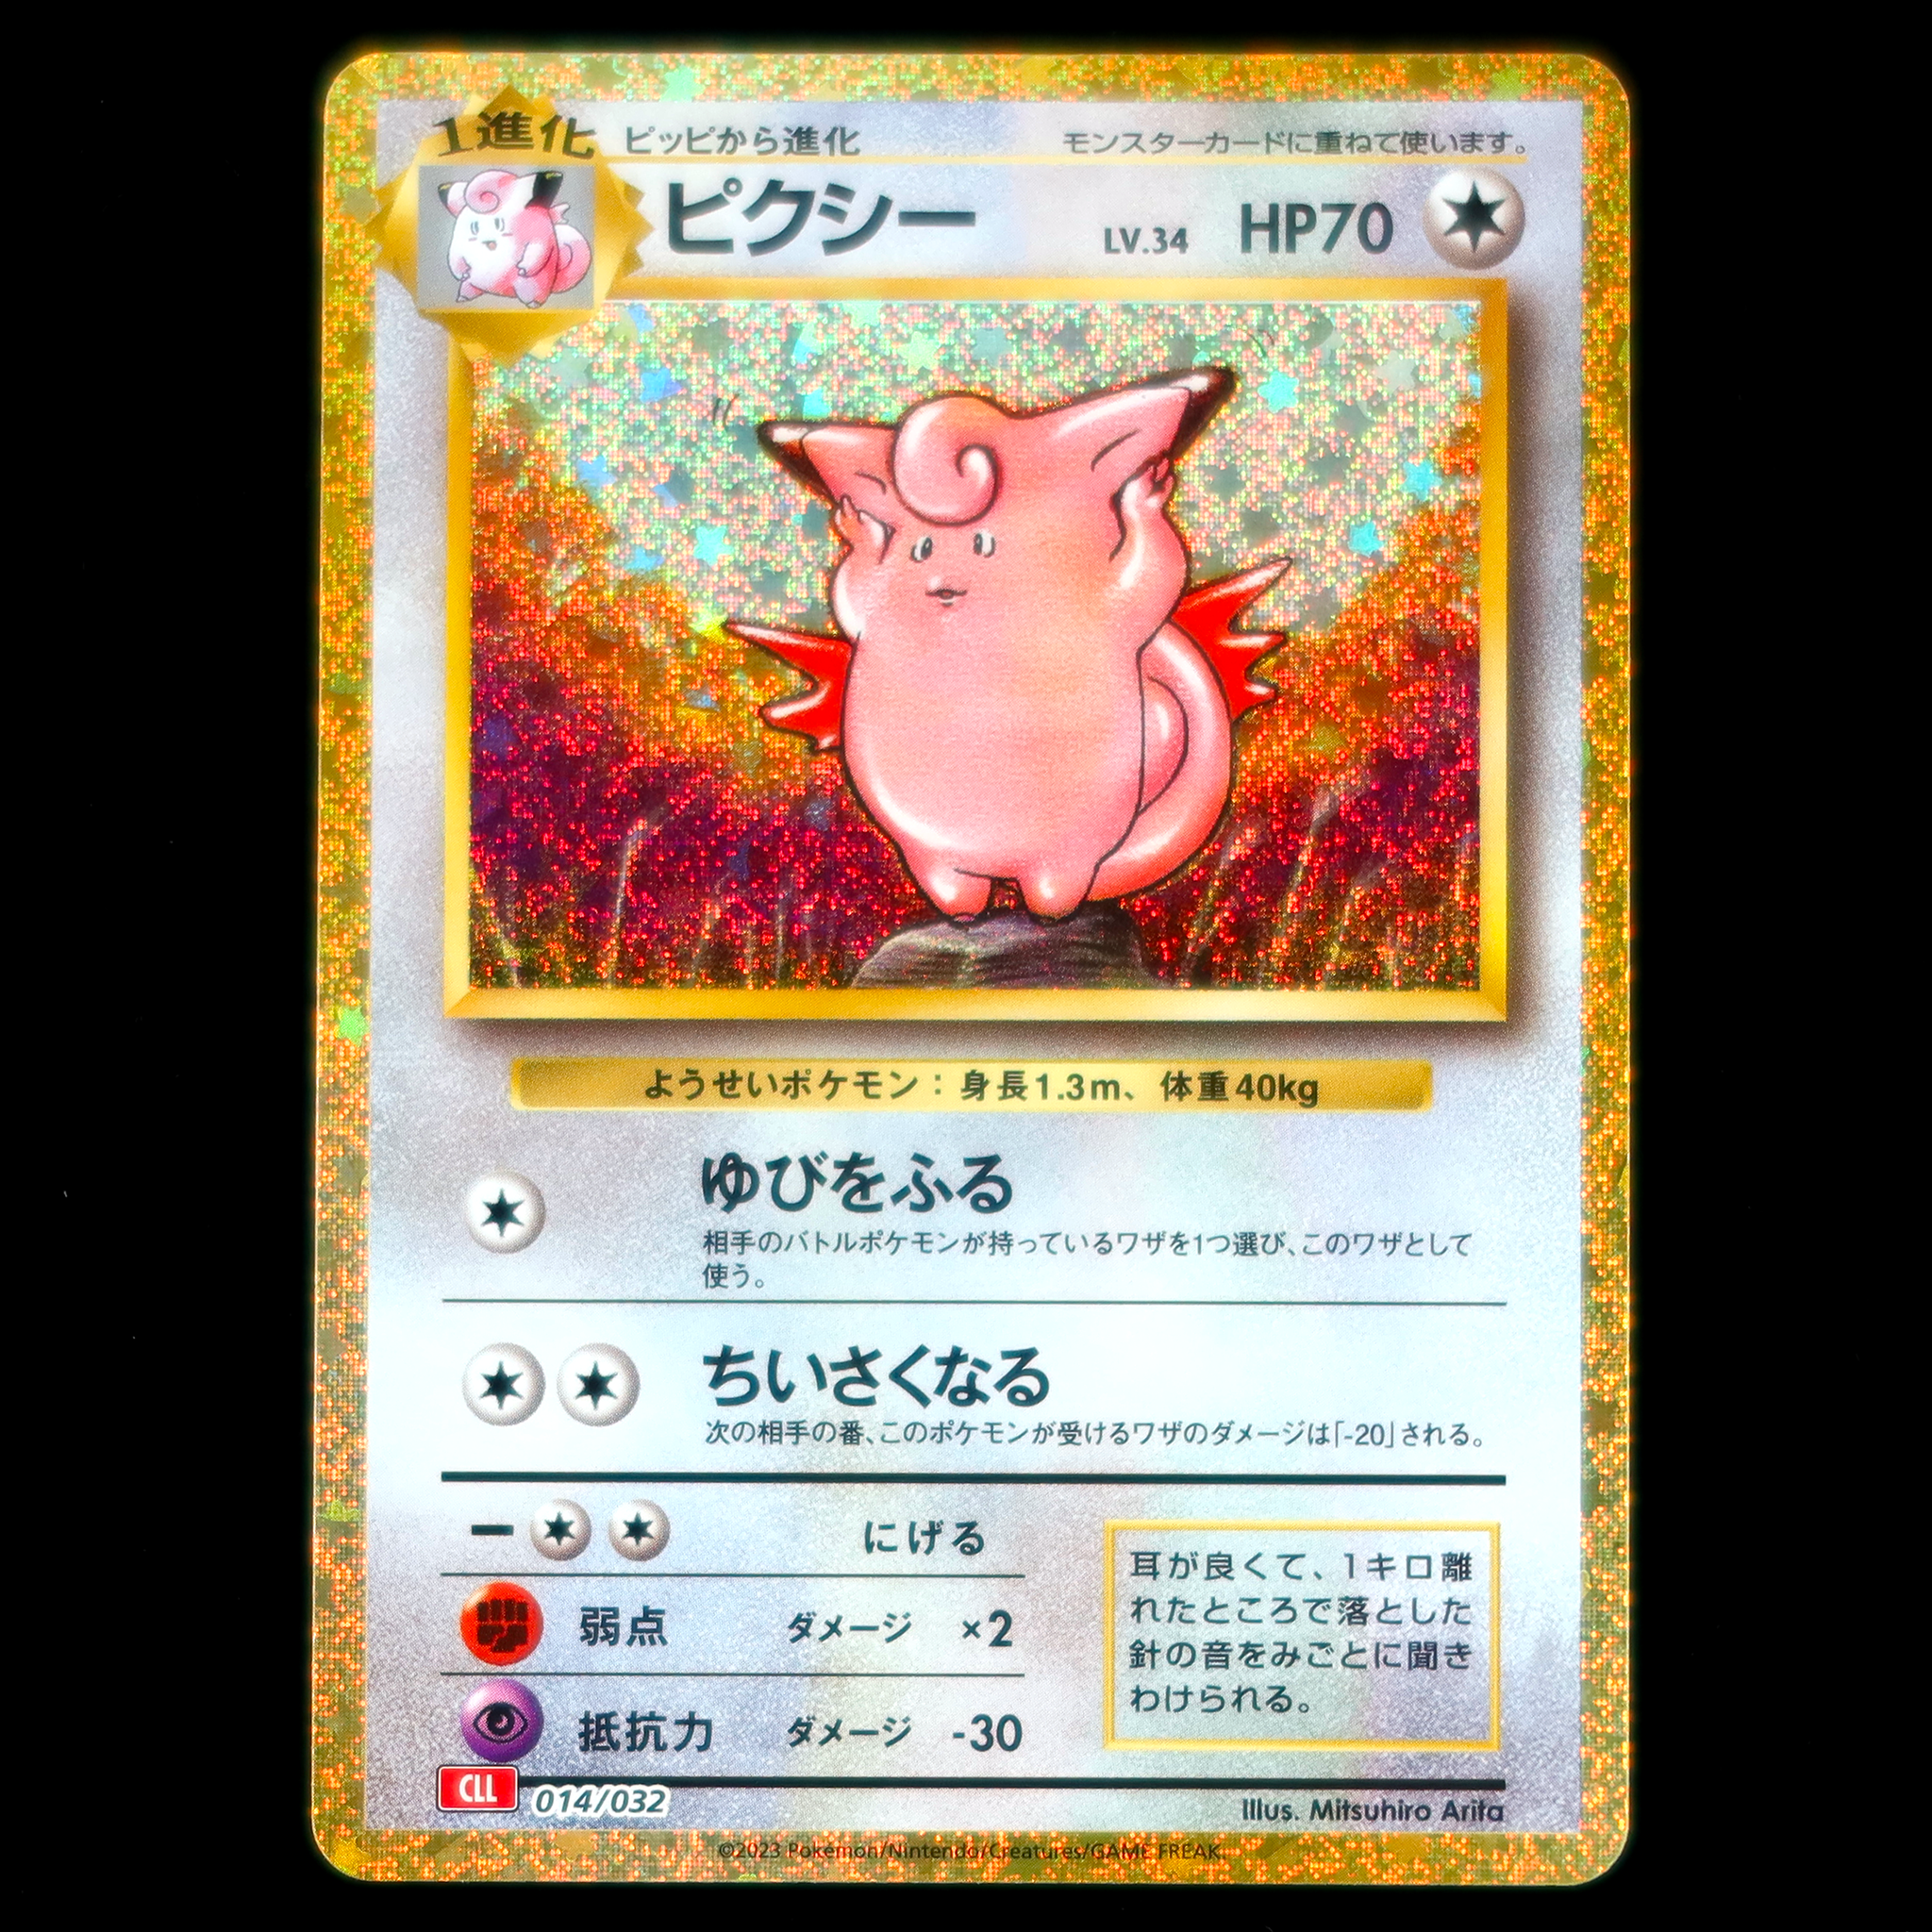 Pokémon Card Game Scarlet & Violet ｢Pokémon Card Game Classic｣  Pokémon Card Game CLL 014/032  Clefable